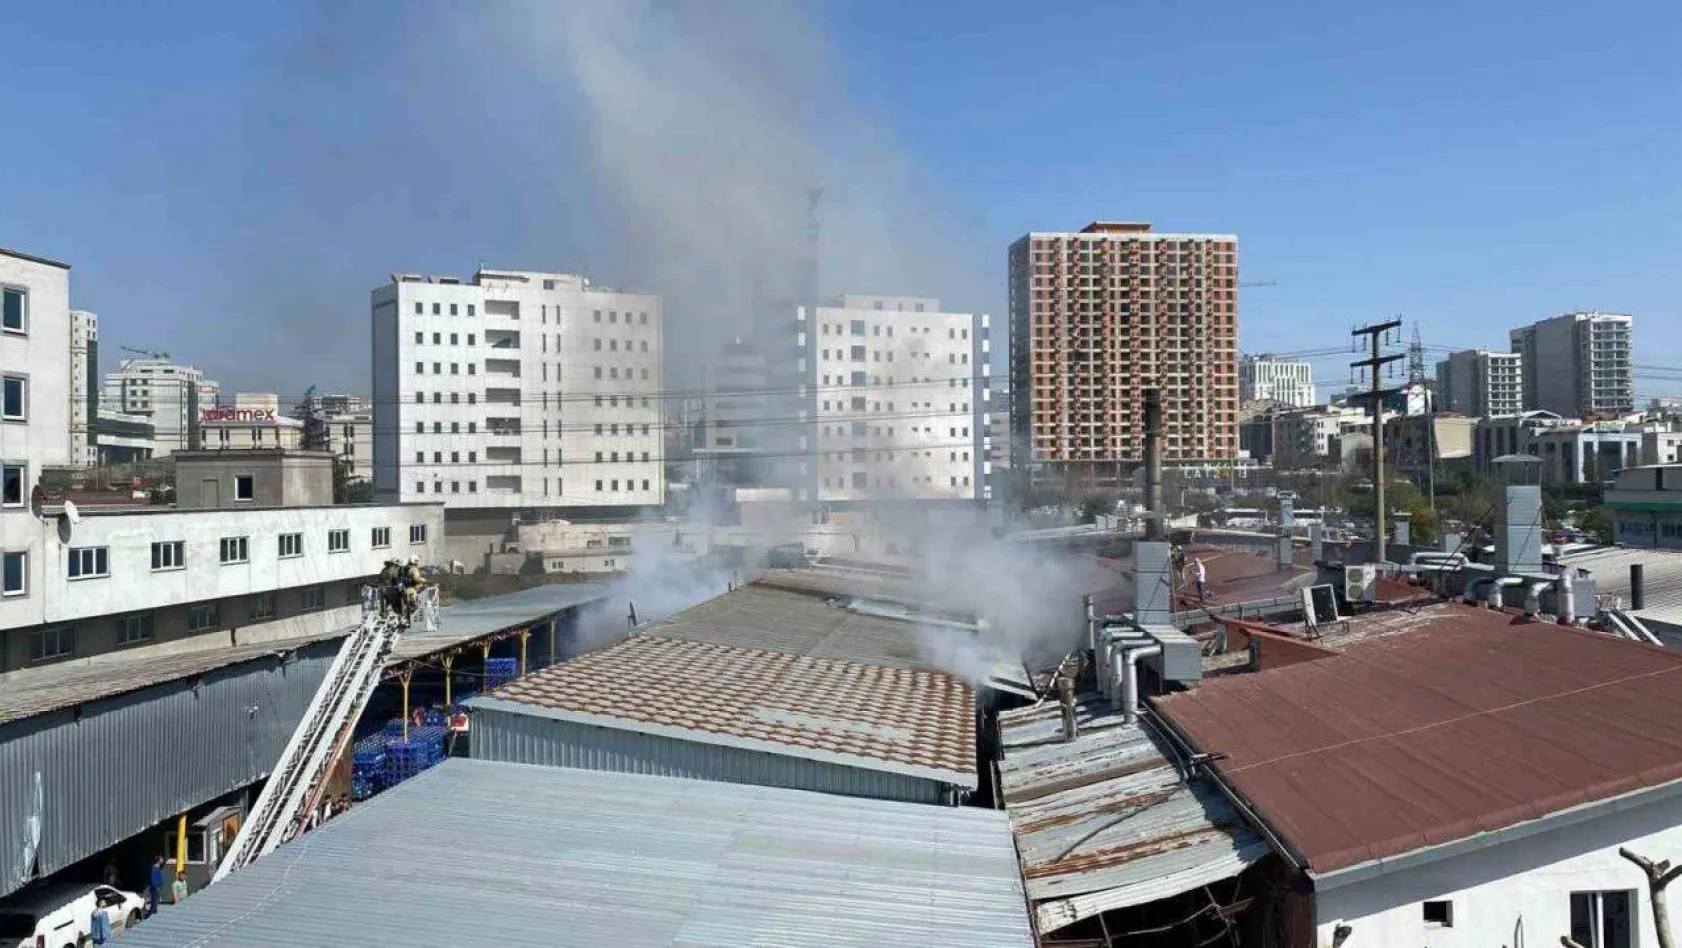 Küçükçekmece'de tekstil fabrikasının deposunda korkutan yangın